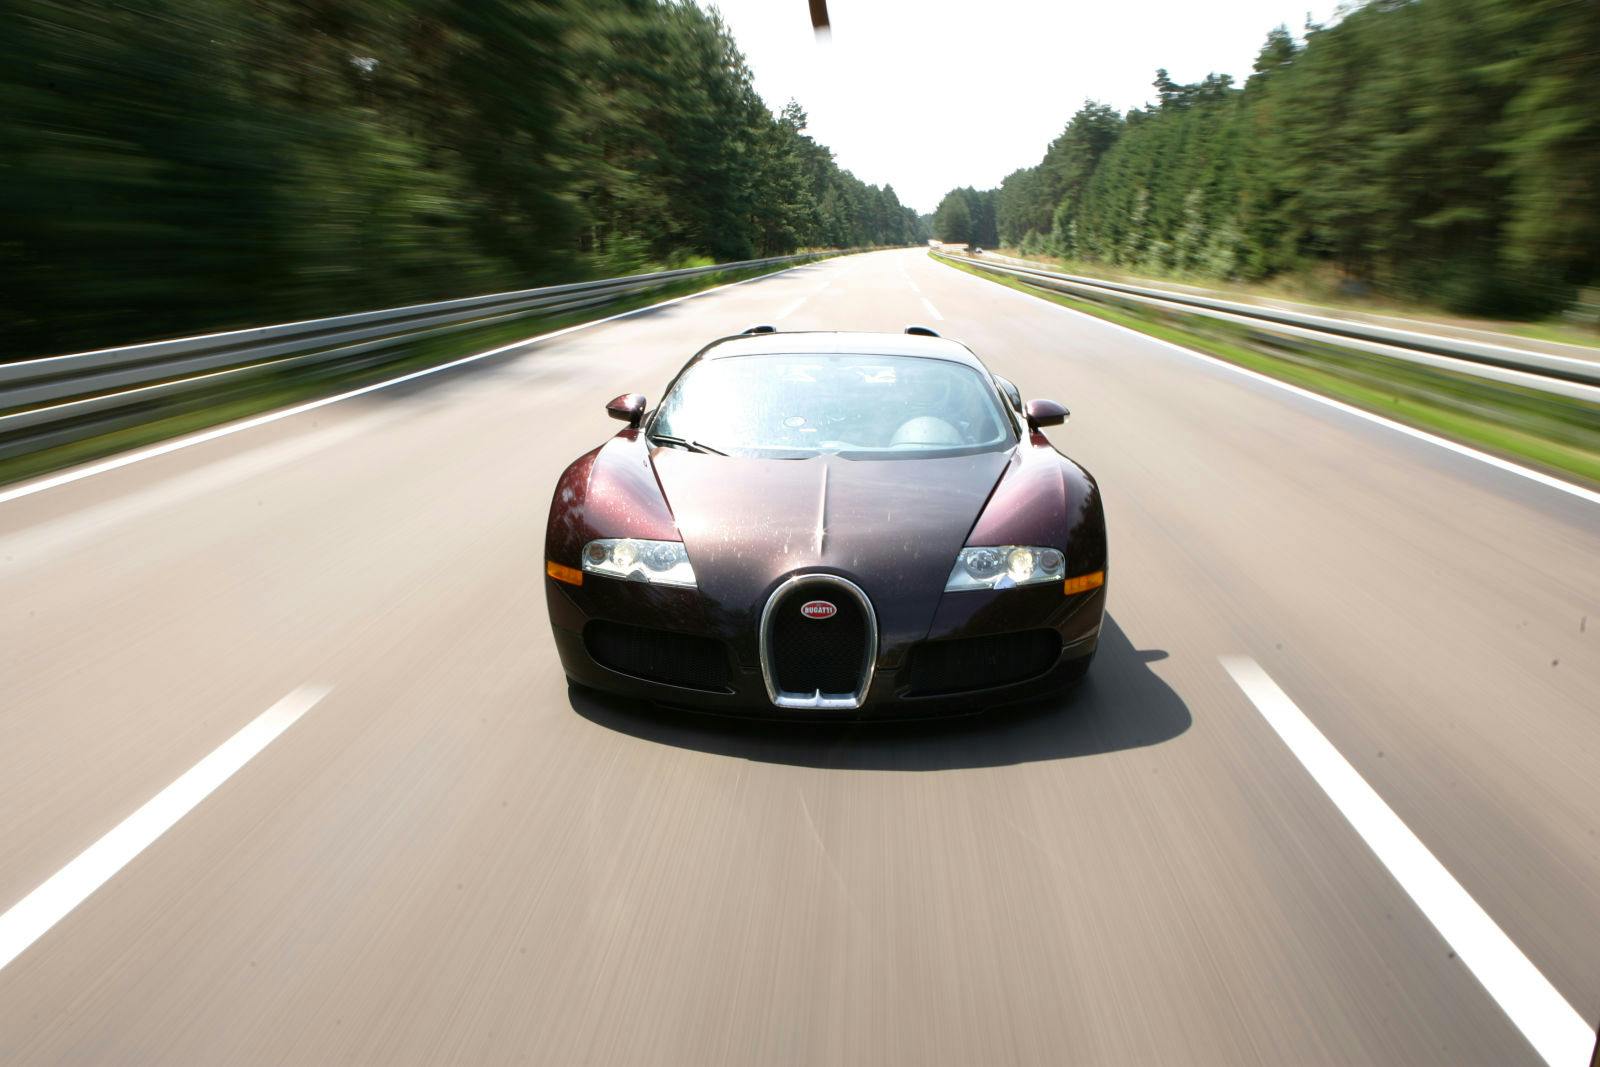 Vor 15 Jahren schafft der Bugatti Veyron 16.4 das Unmögliche: Als erstes Serienfahrzeug überhaupt durchbricht er die 400 km/h-Grenze.